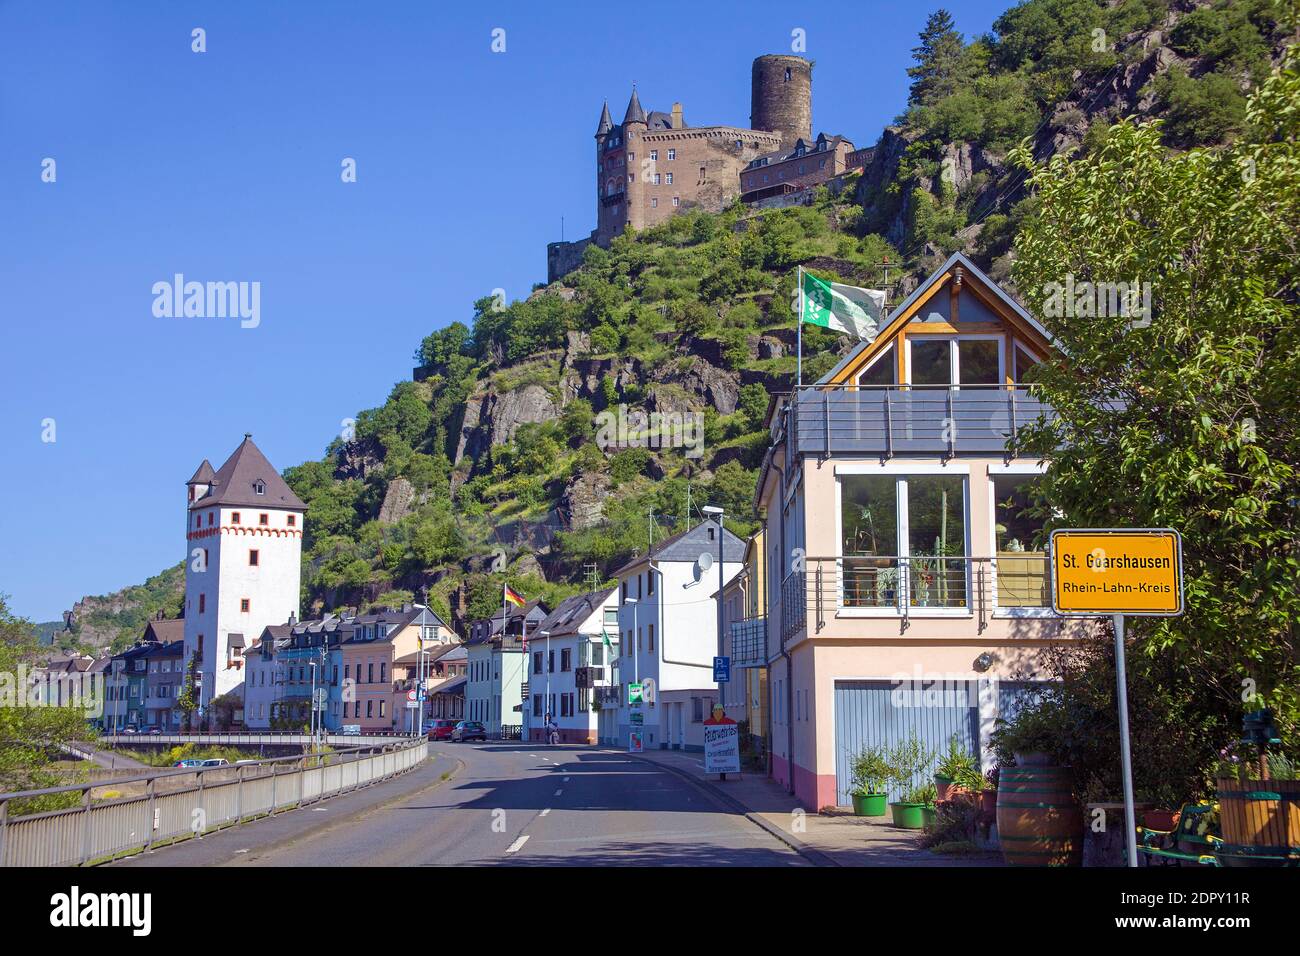 St. Goarshausen mit viereckigem Turm und Burg Katz (Burg Katz), UNESCO Weltkulturerbe, Oberes Mittelrheintal, Deutschland Stockfoto